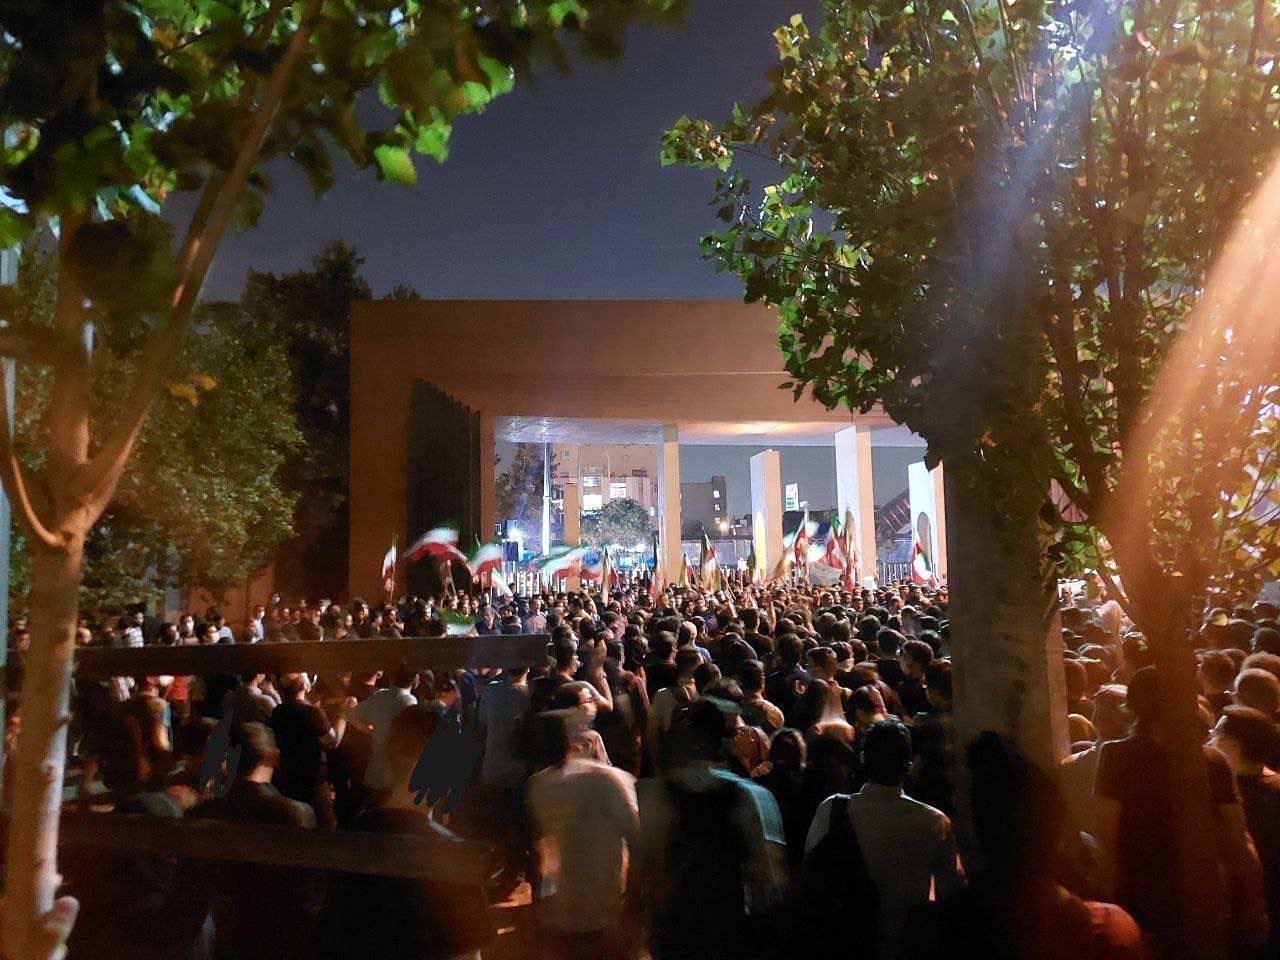 تصاویر تازه از حواشی اعتراضات در دانشگاه شریف